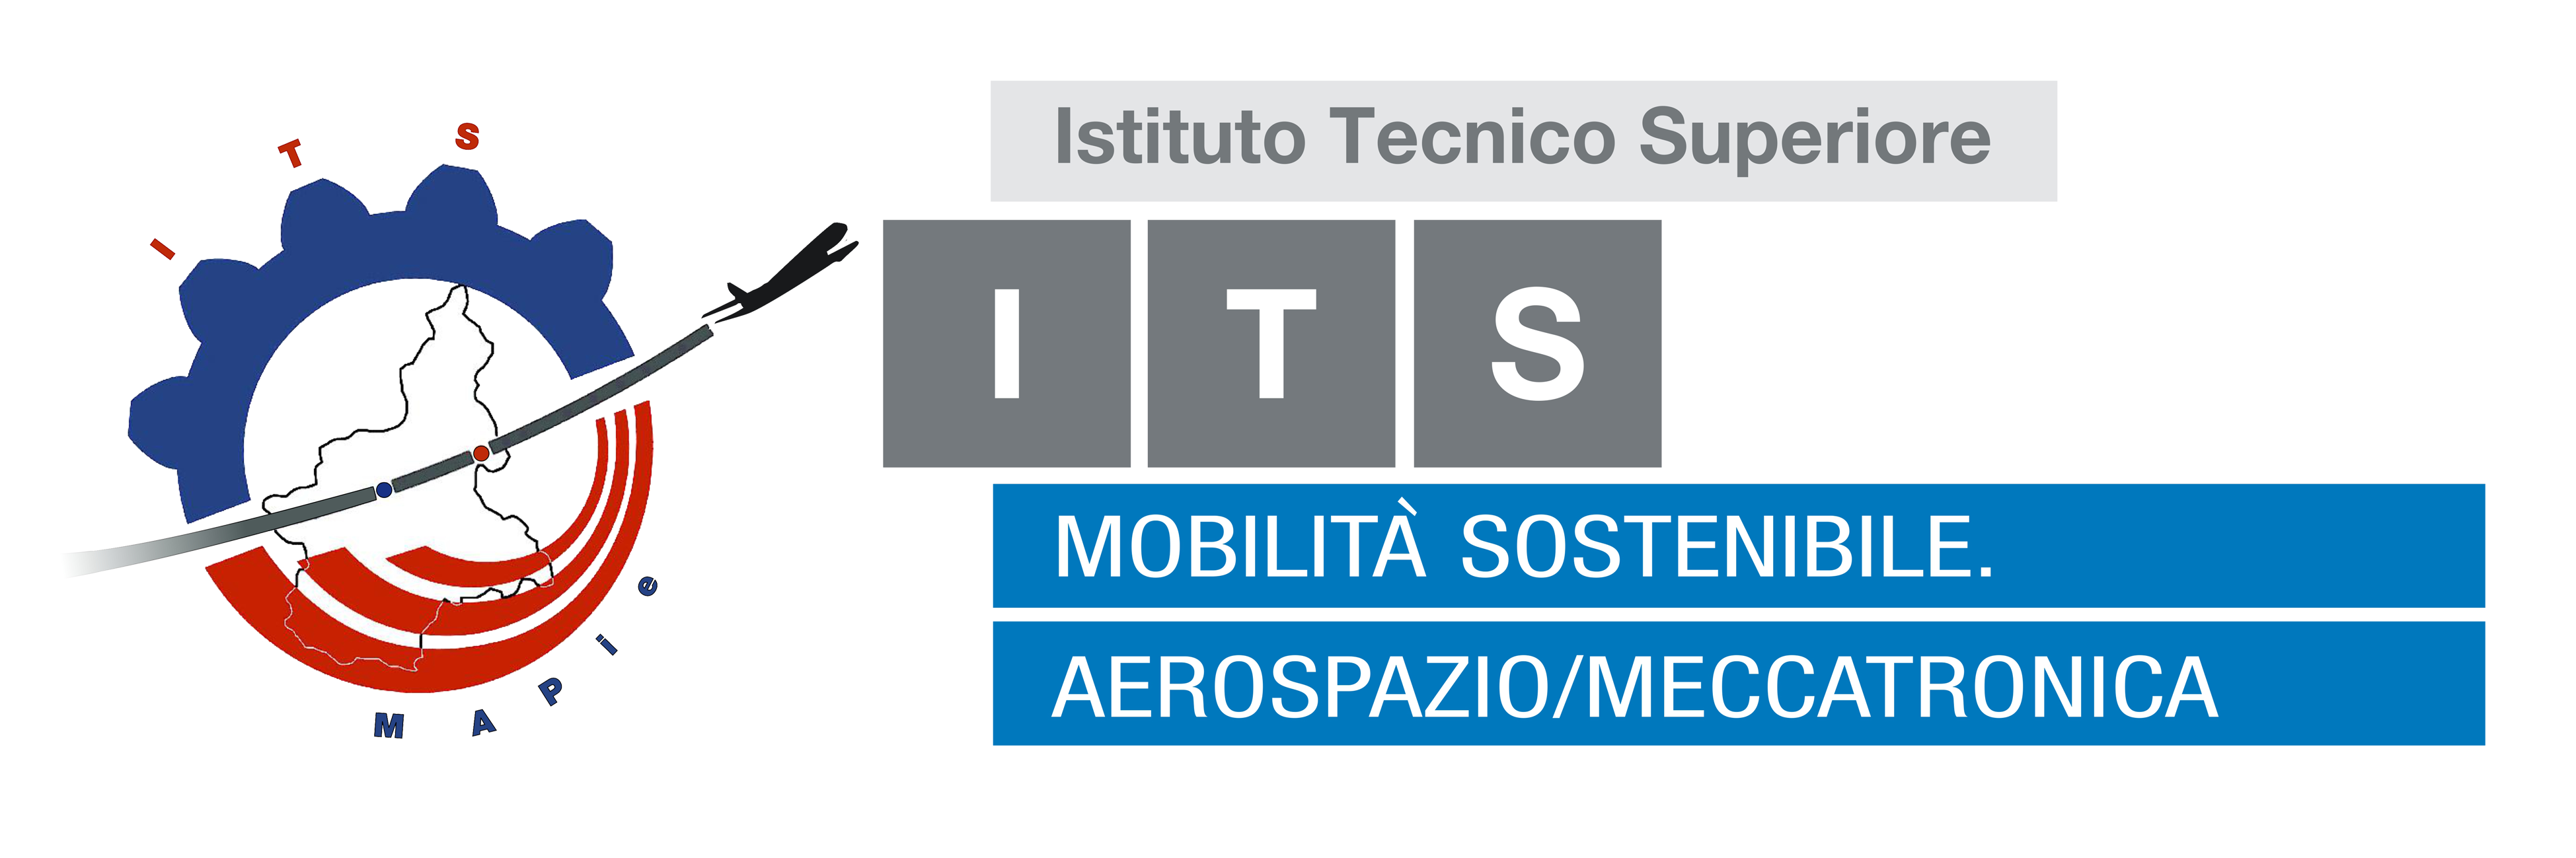 ITS -P-Mobilità sostenibile AEROSPAZIO/MECCATRONICA del Piemonte